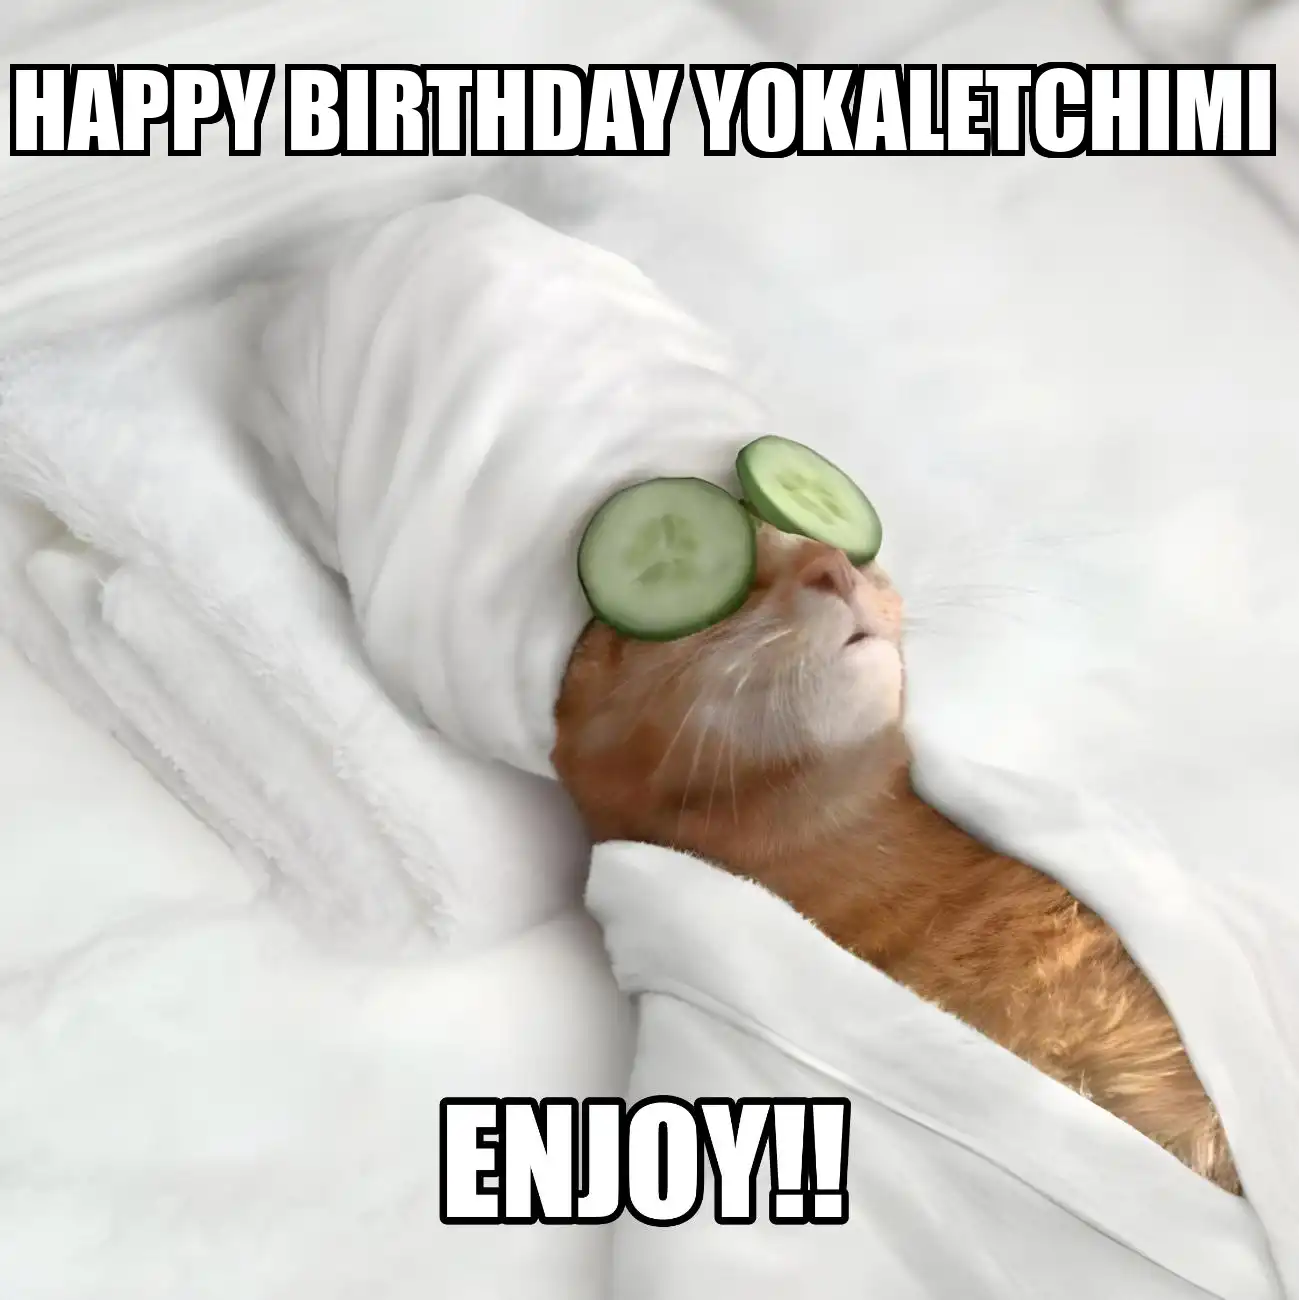 Happy Birthday Yokaletchimi Enjoy Cat Meme